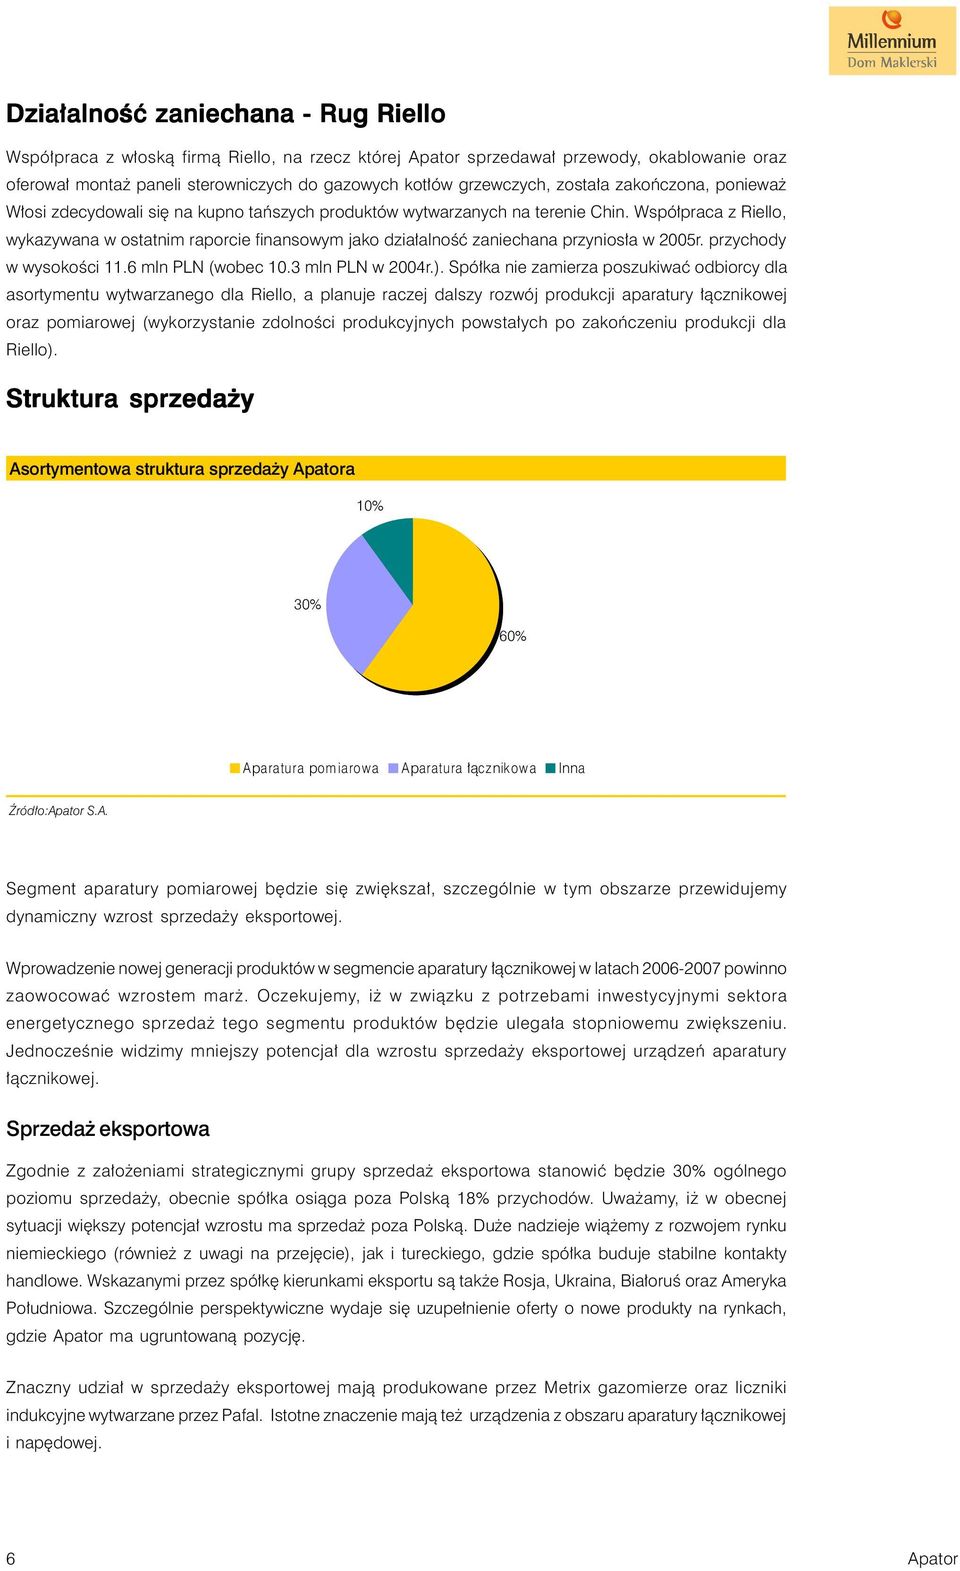 Współpraca z Riello, wykazywana w ostatnim raporcie finansowym jako działalność zaniechana przyniosła w 2005r. przychody w wysokości 11.6 mln PLN (wobec 10.3 mln PLN w 2004r.).